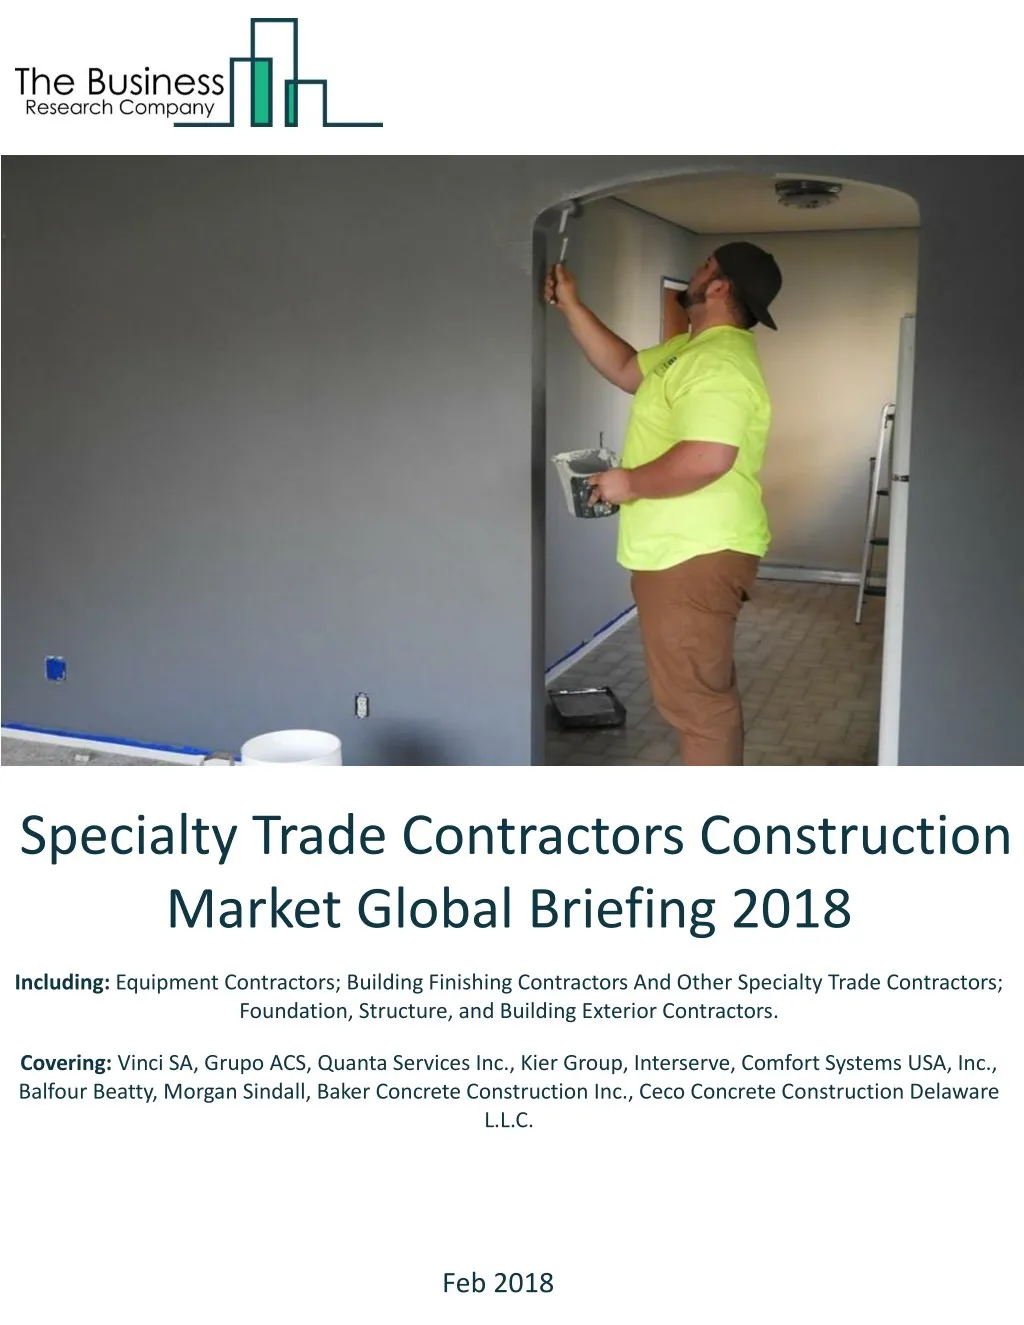 specialty trade contractors construction market